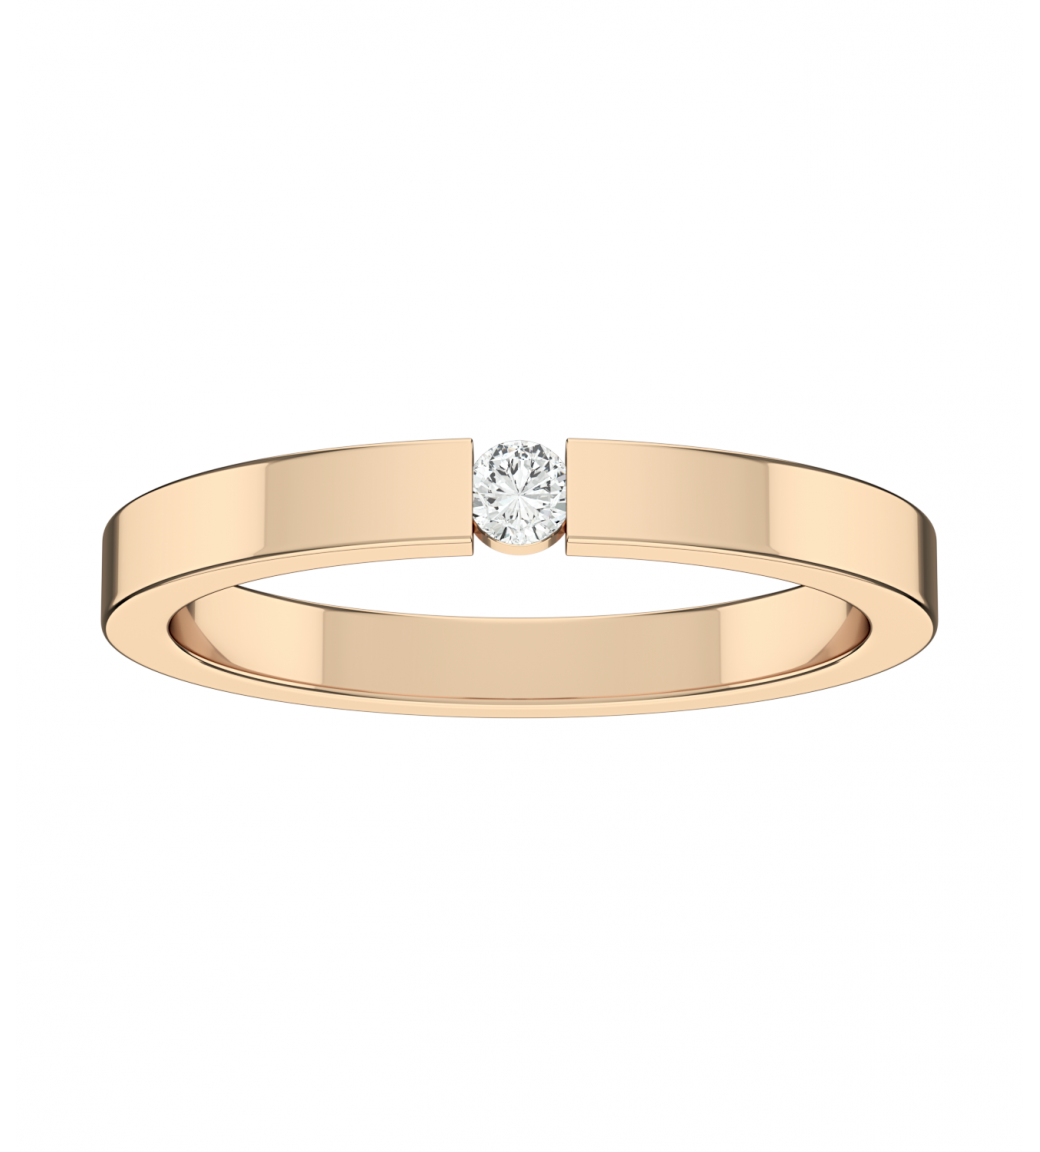 Обручальное кольцо на заказ (А-242)